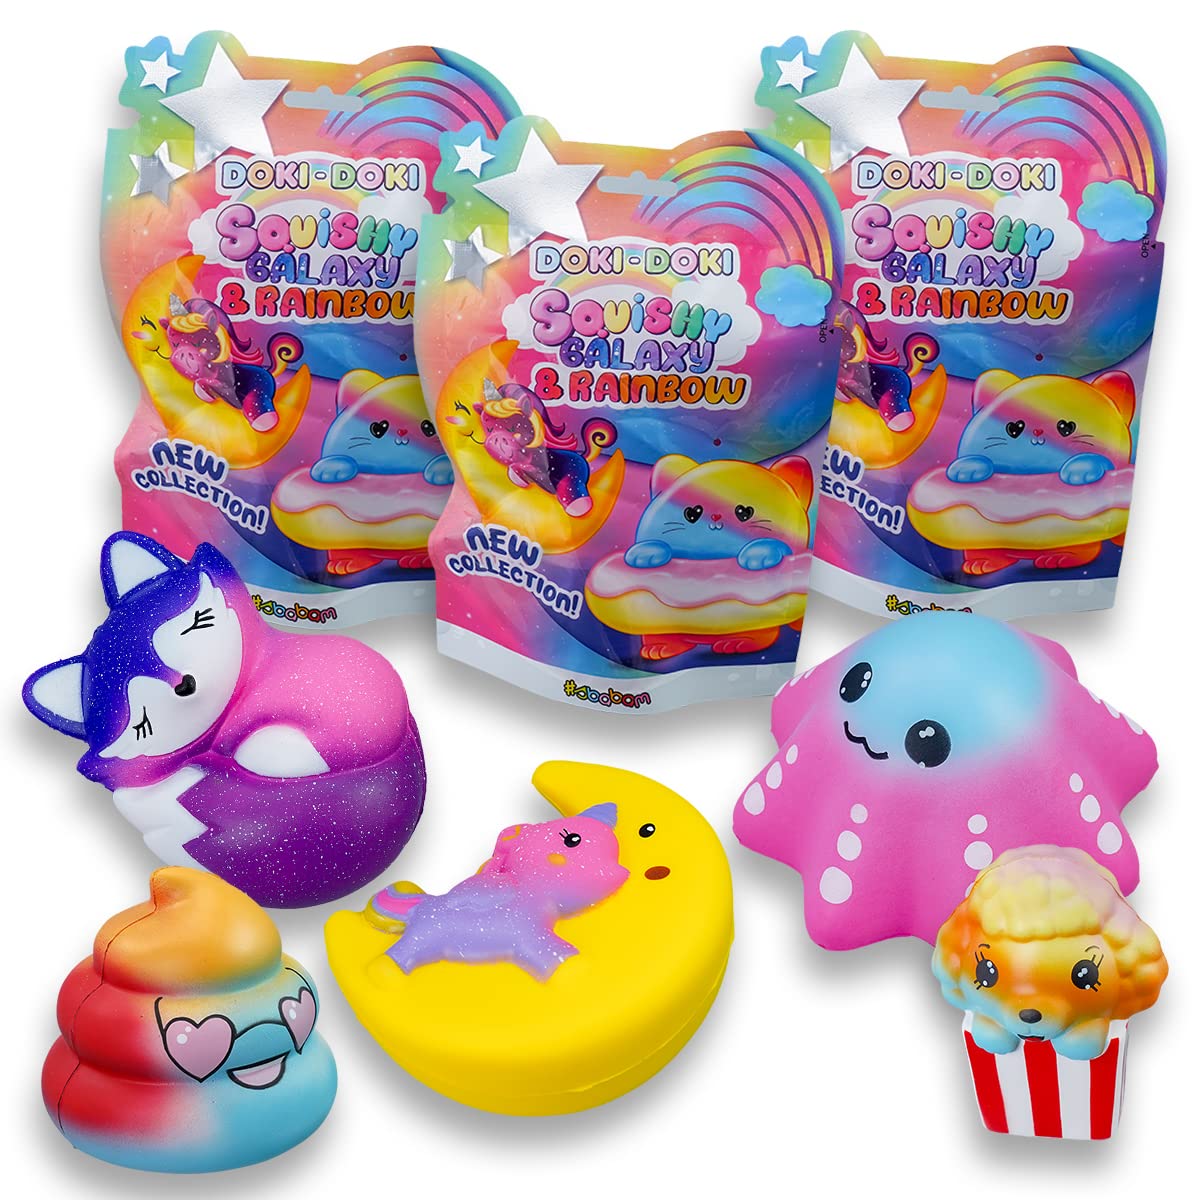 Sbabam Doki Doki Squishy Galaxy and Rainbow, Spielzeug ab 3 Jahre für Kinder, 3er-Pack, Weiches und Farbenfrohes Squishy Spielzeug als Baby Geschenk - Tiere Figuren wie Einhorn, Fuchs und Andere